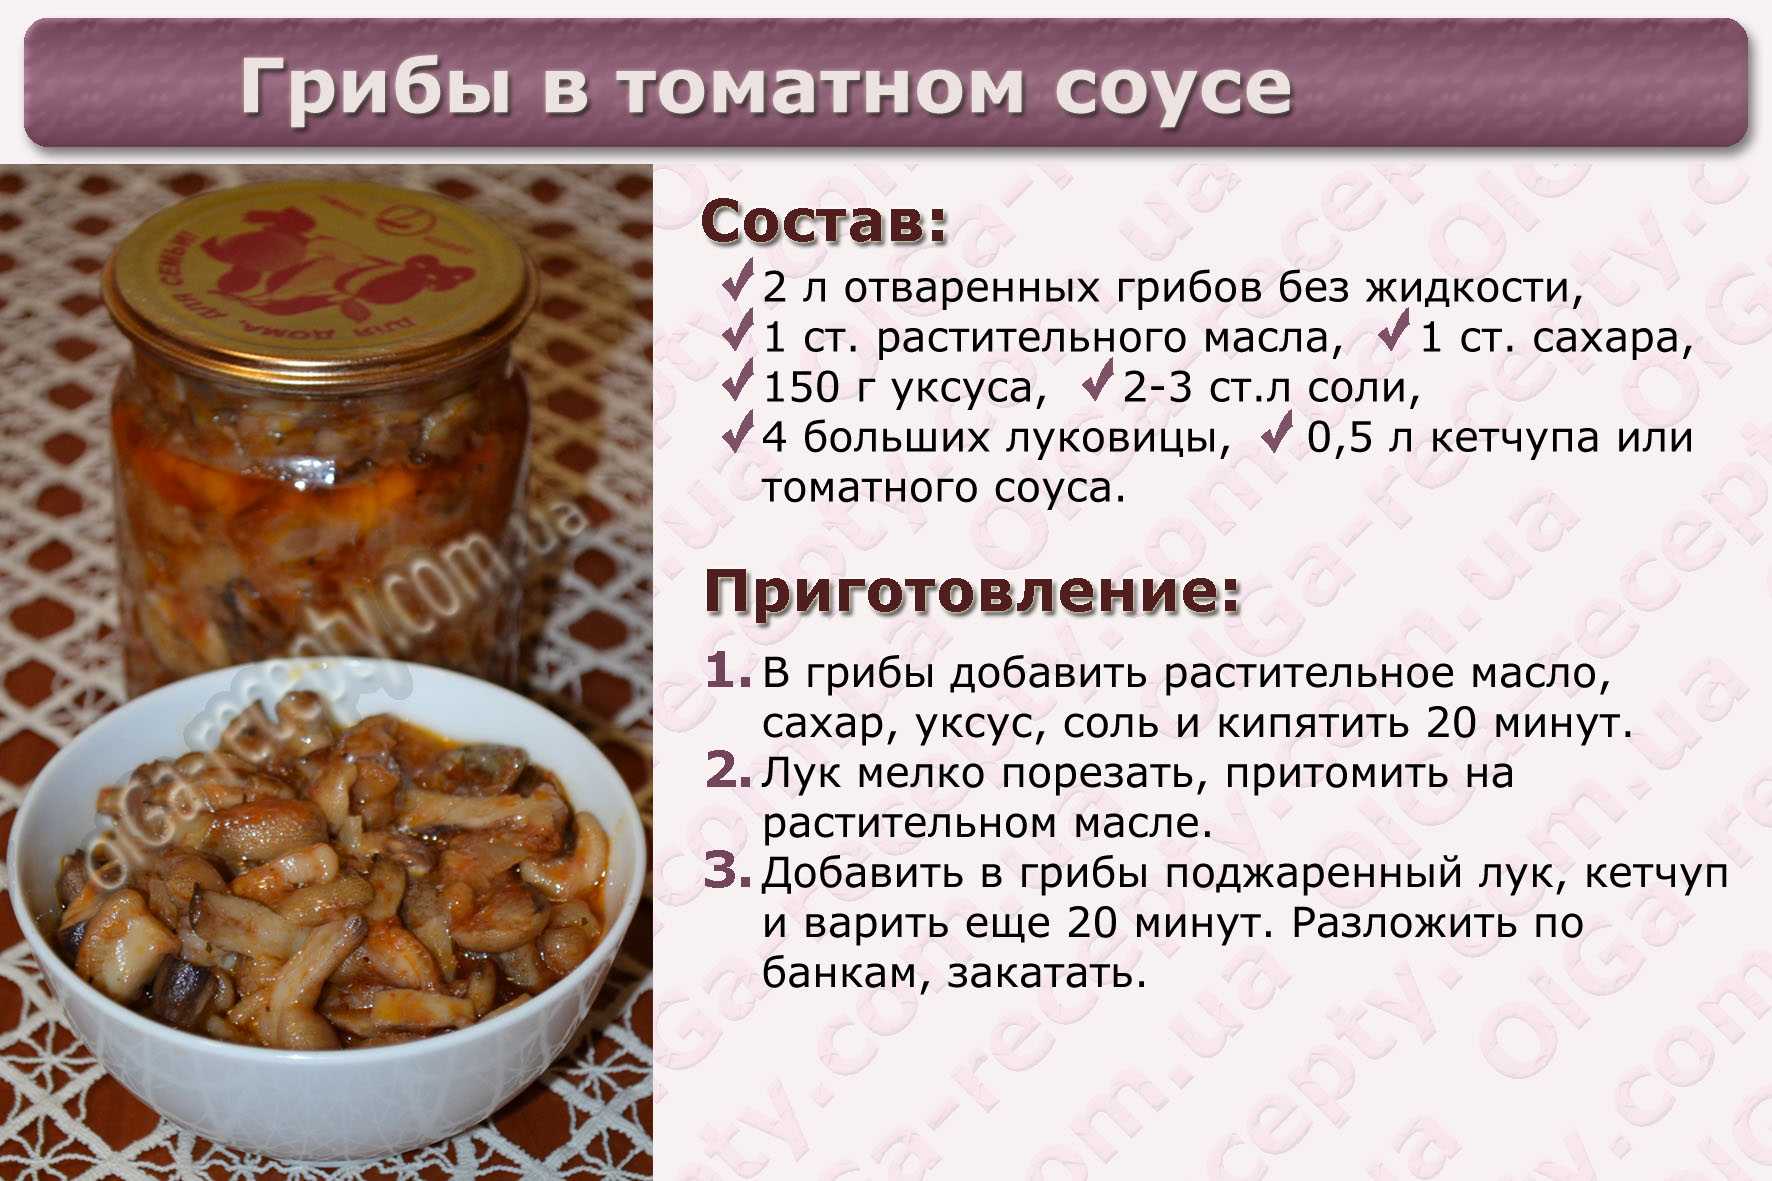 Котлеты из грибов — рецепты простые и вкусные